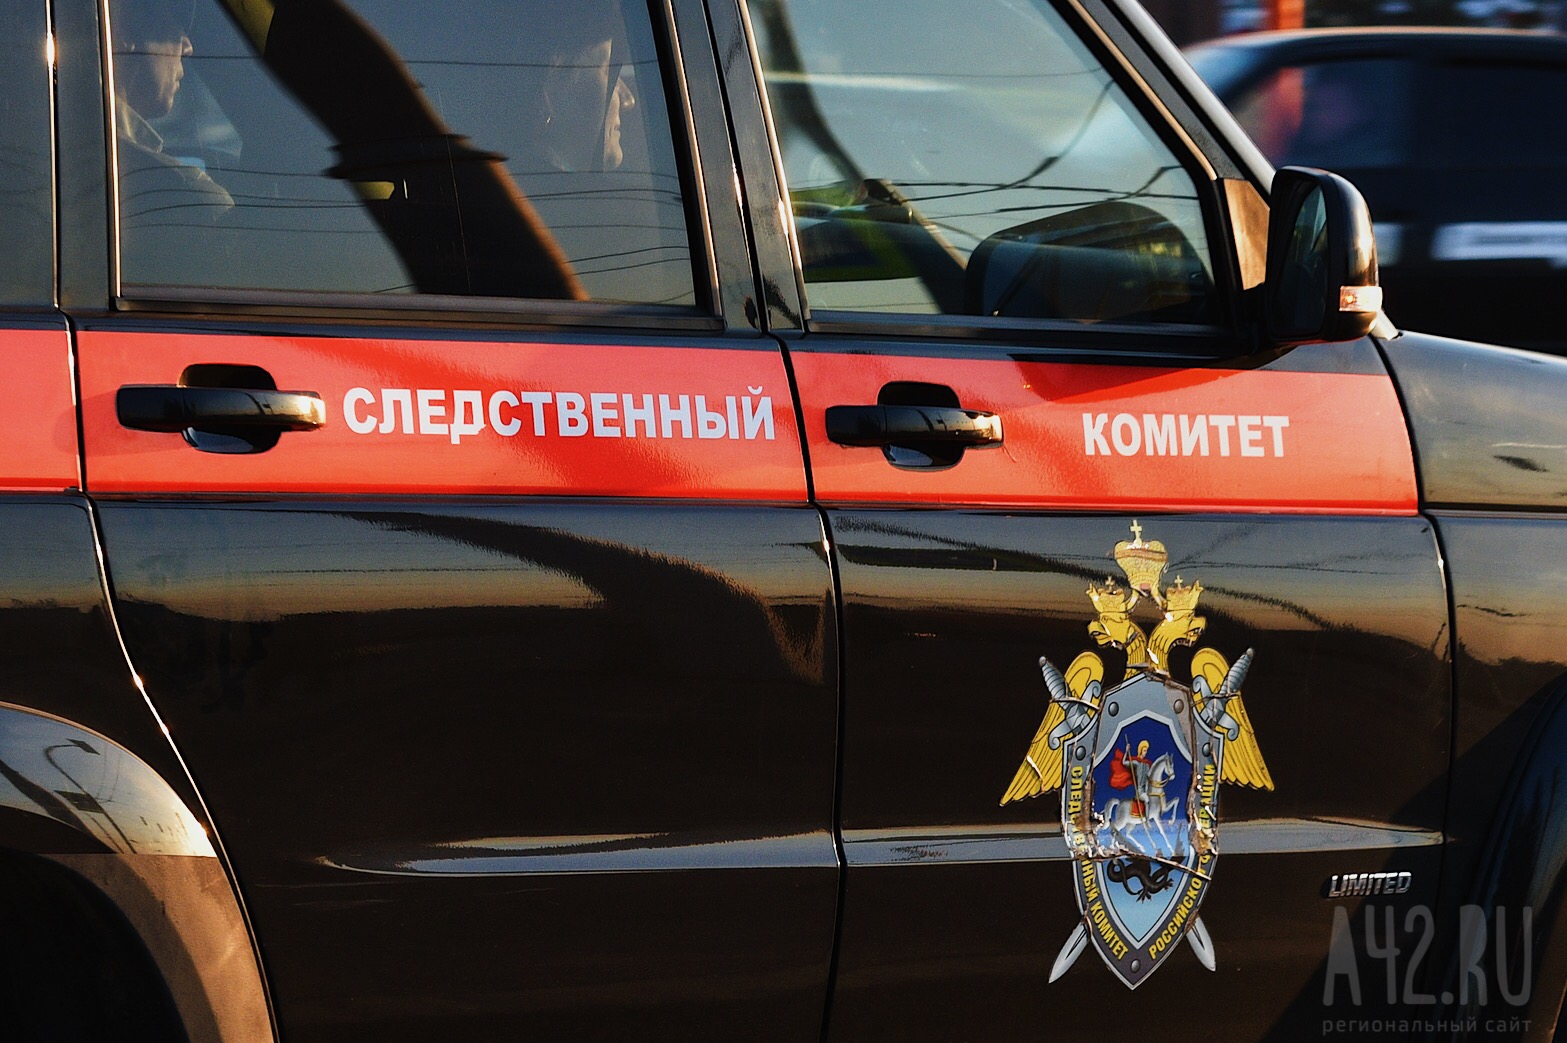 Подростка будут судить за грабежи и угон машины в Кузбассе